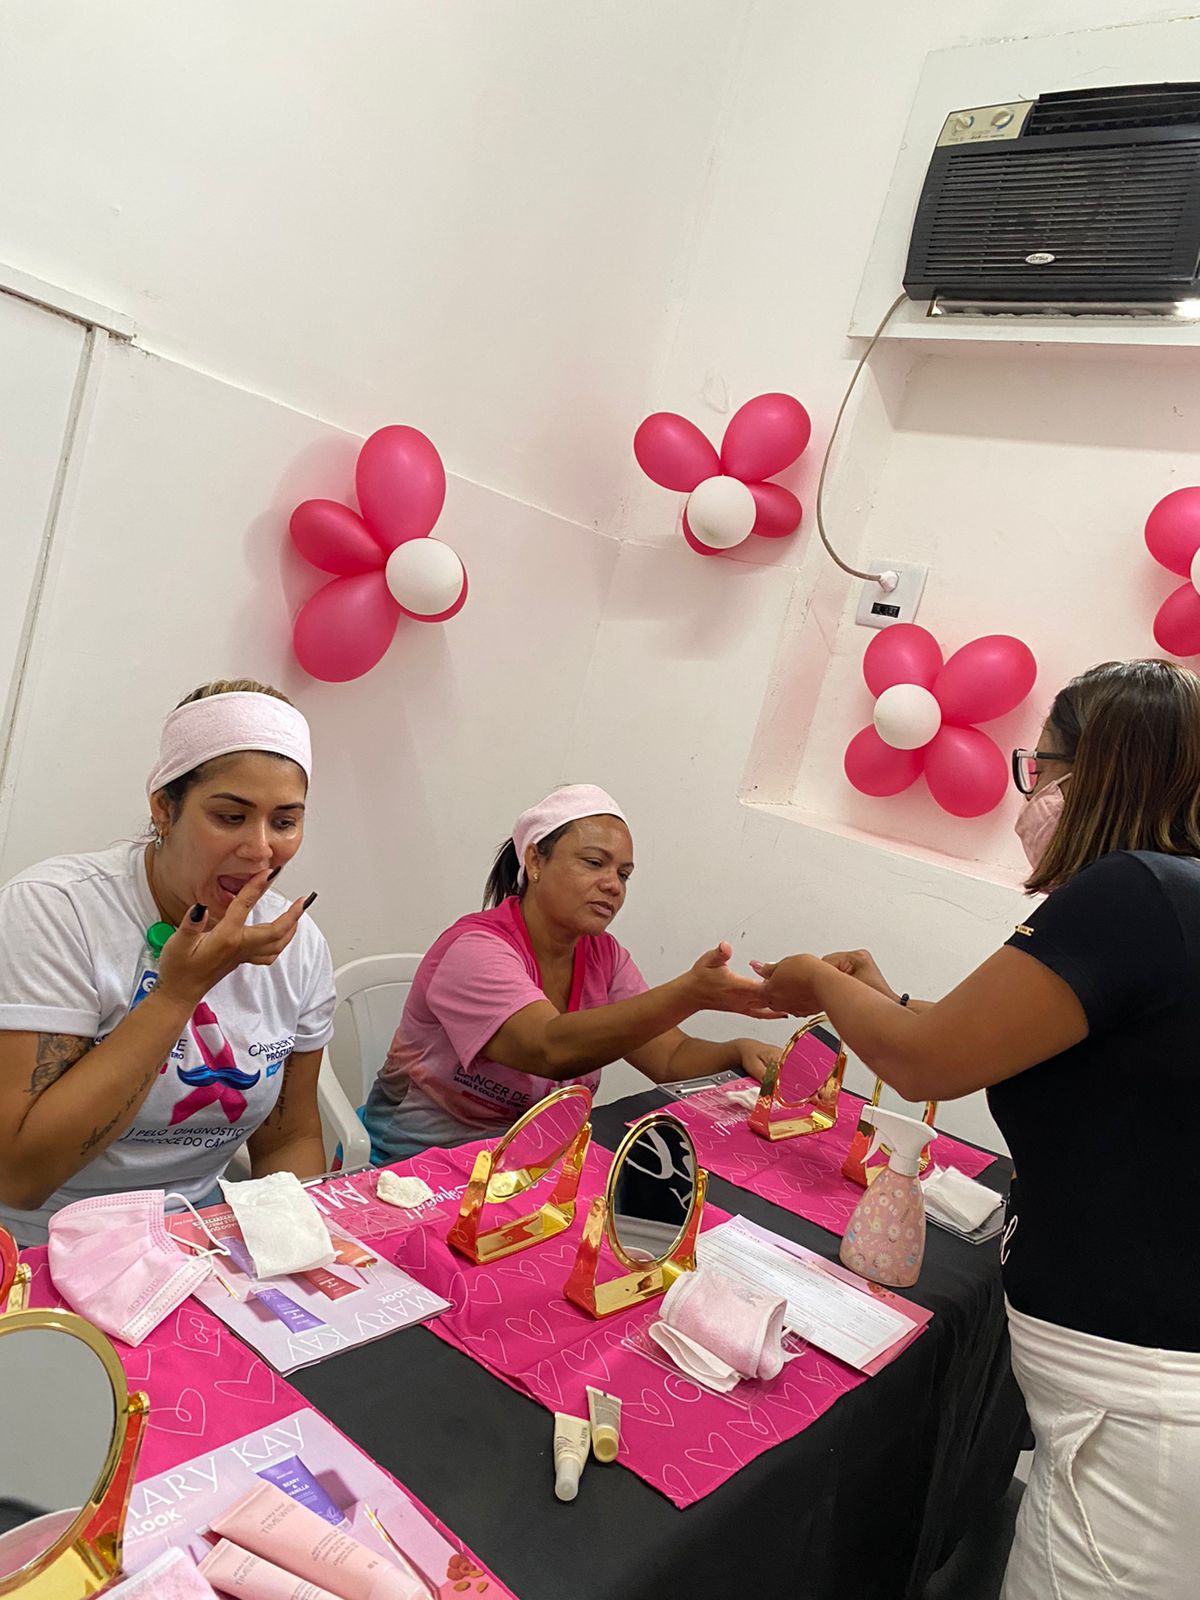 Dasa e Nav laçam campanha com spoiler do bem para o Outubro Rosa -  HOSPITAIS BRASIL